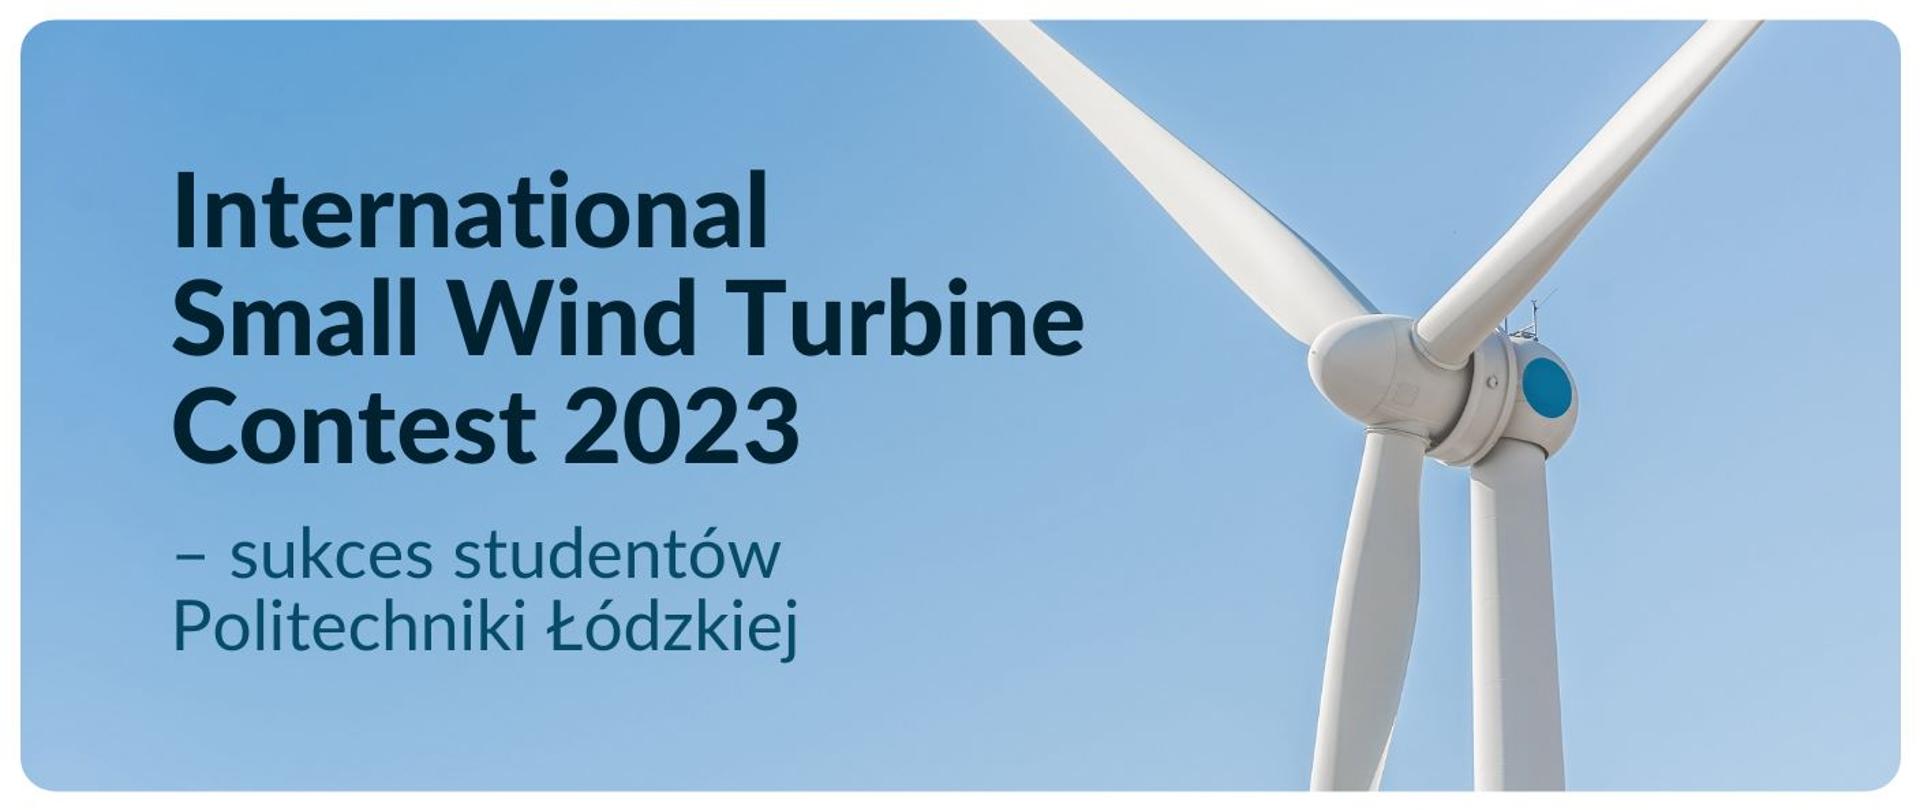 Grafika z wiatrakiem i napisem International Small Wind Turbine Contest 2023 – sukces studentów Politechniki Łódzkiej